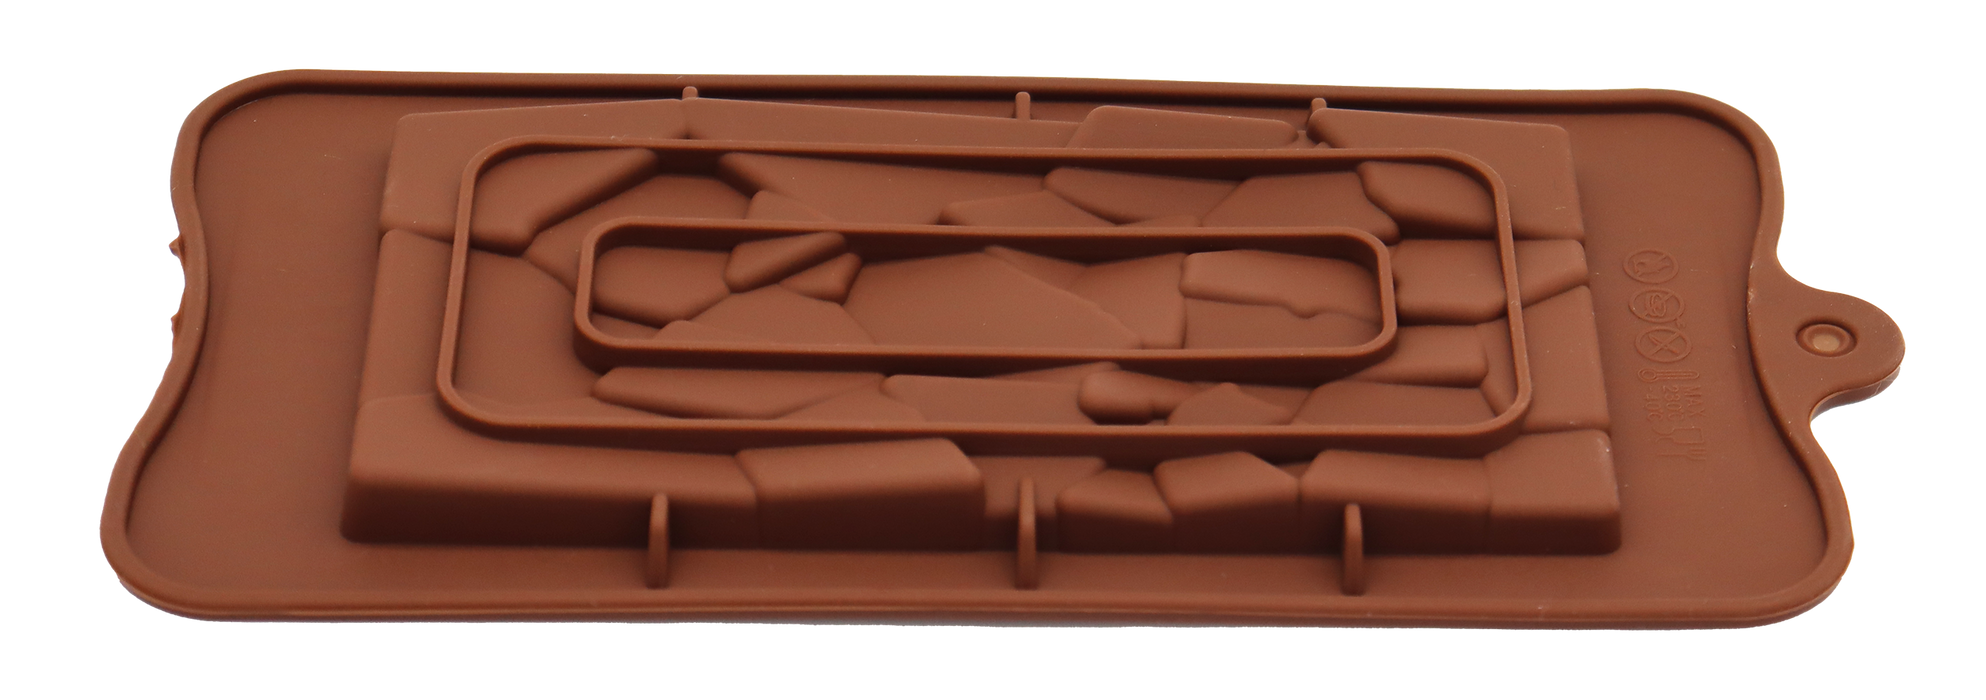 Schokoladenform Brokestone (für 100g Tafel)